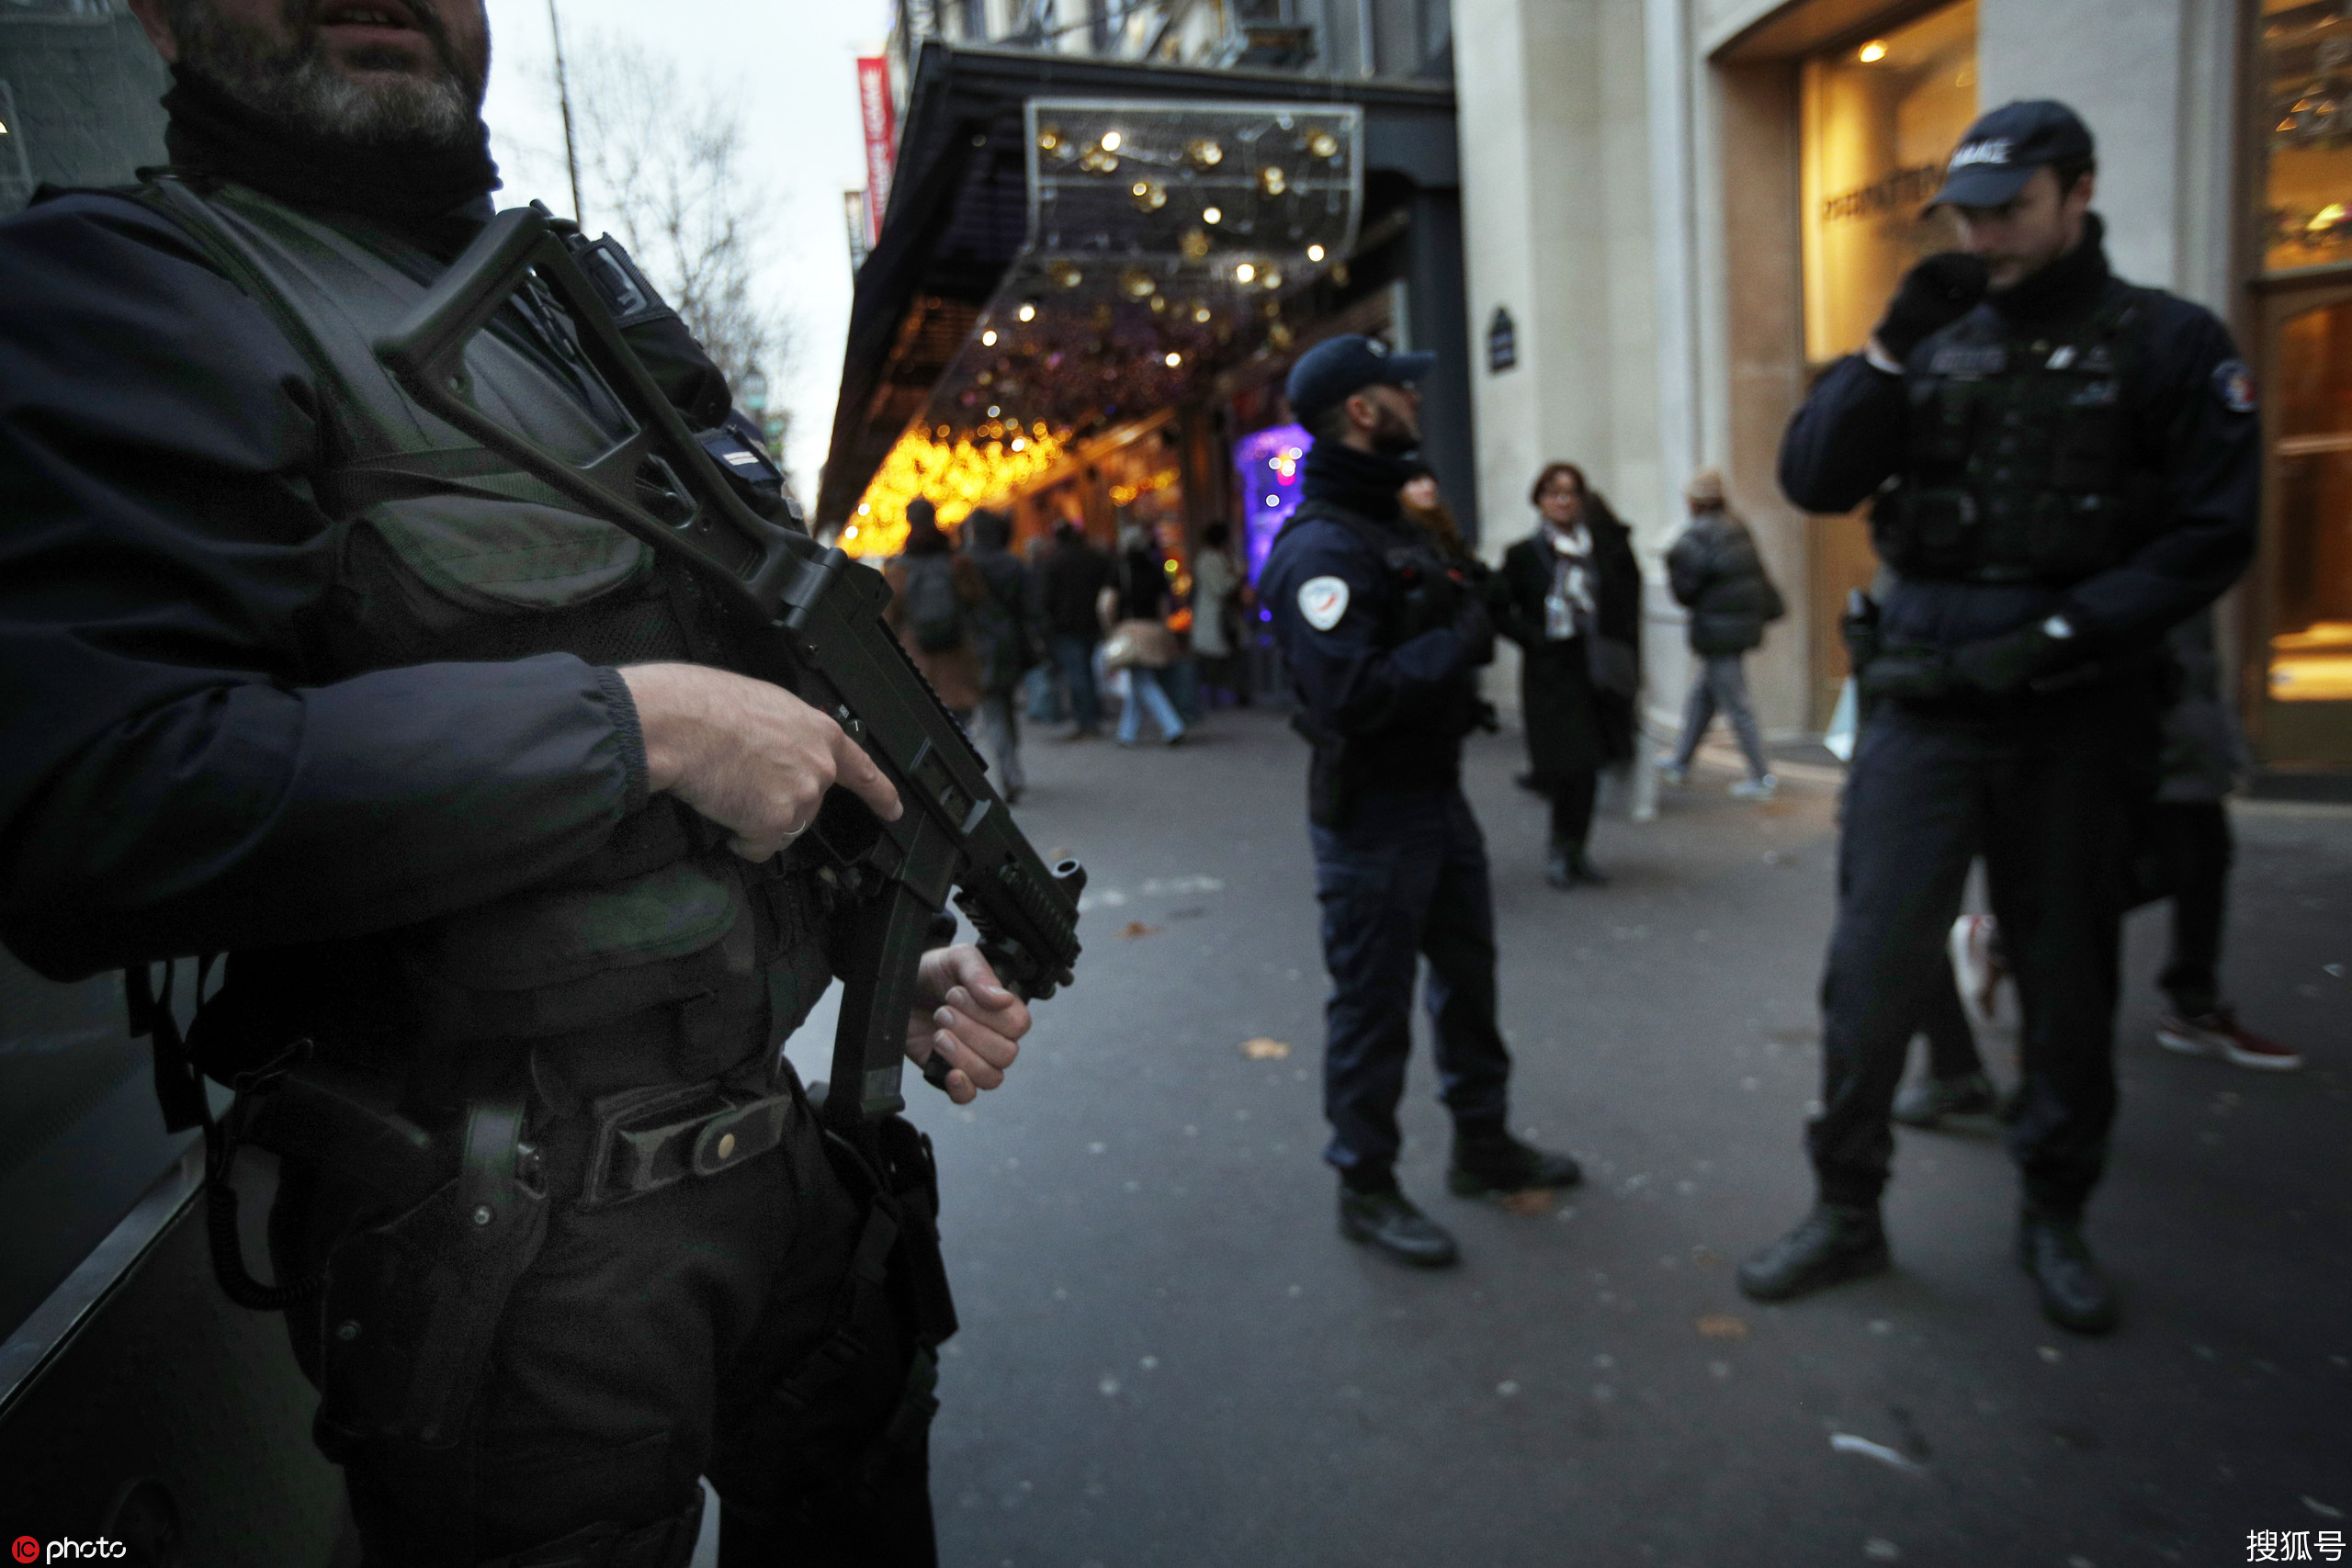 自杀潮席卷法国警界今年第44名警察饮弹身亡